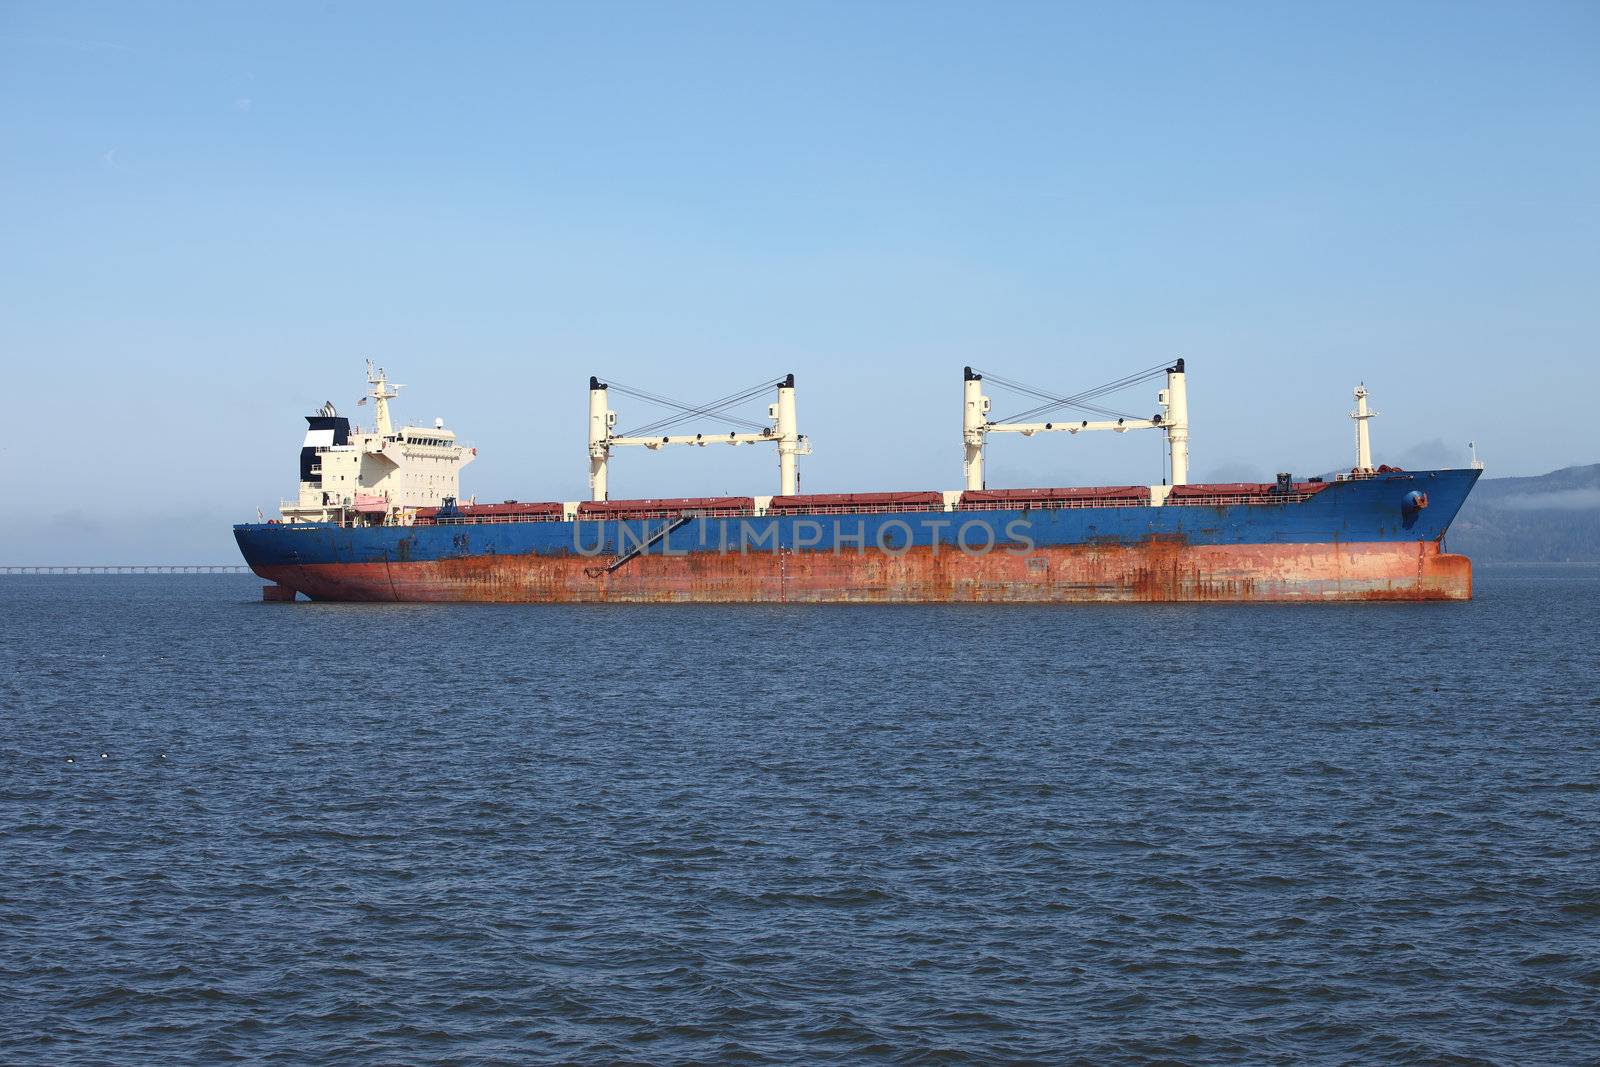 A long cargo ship in the Astoria harbor.